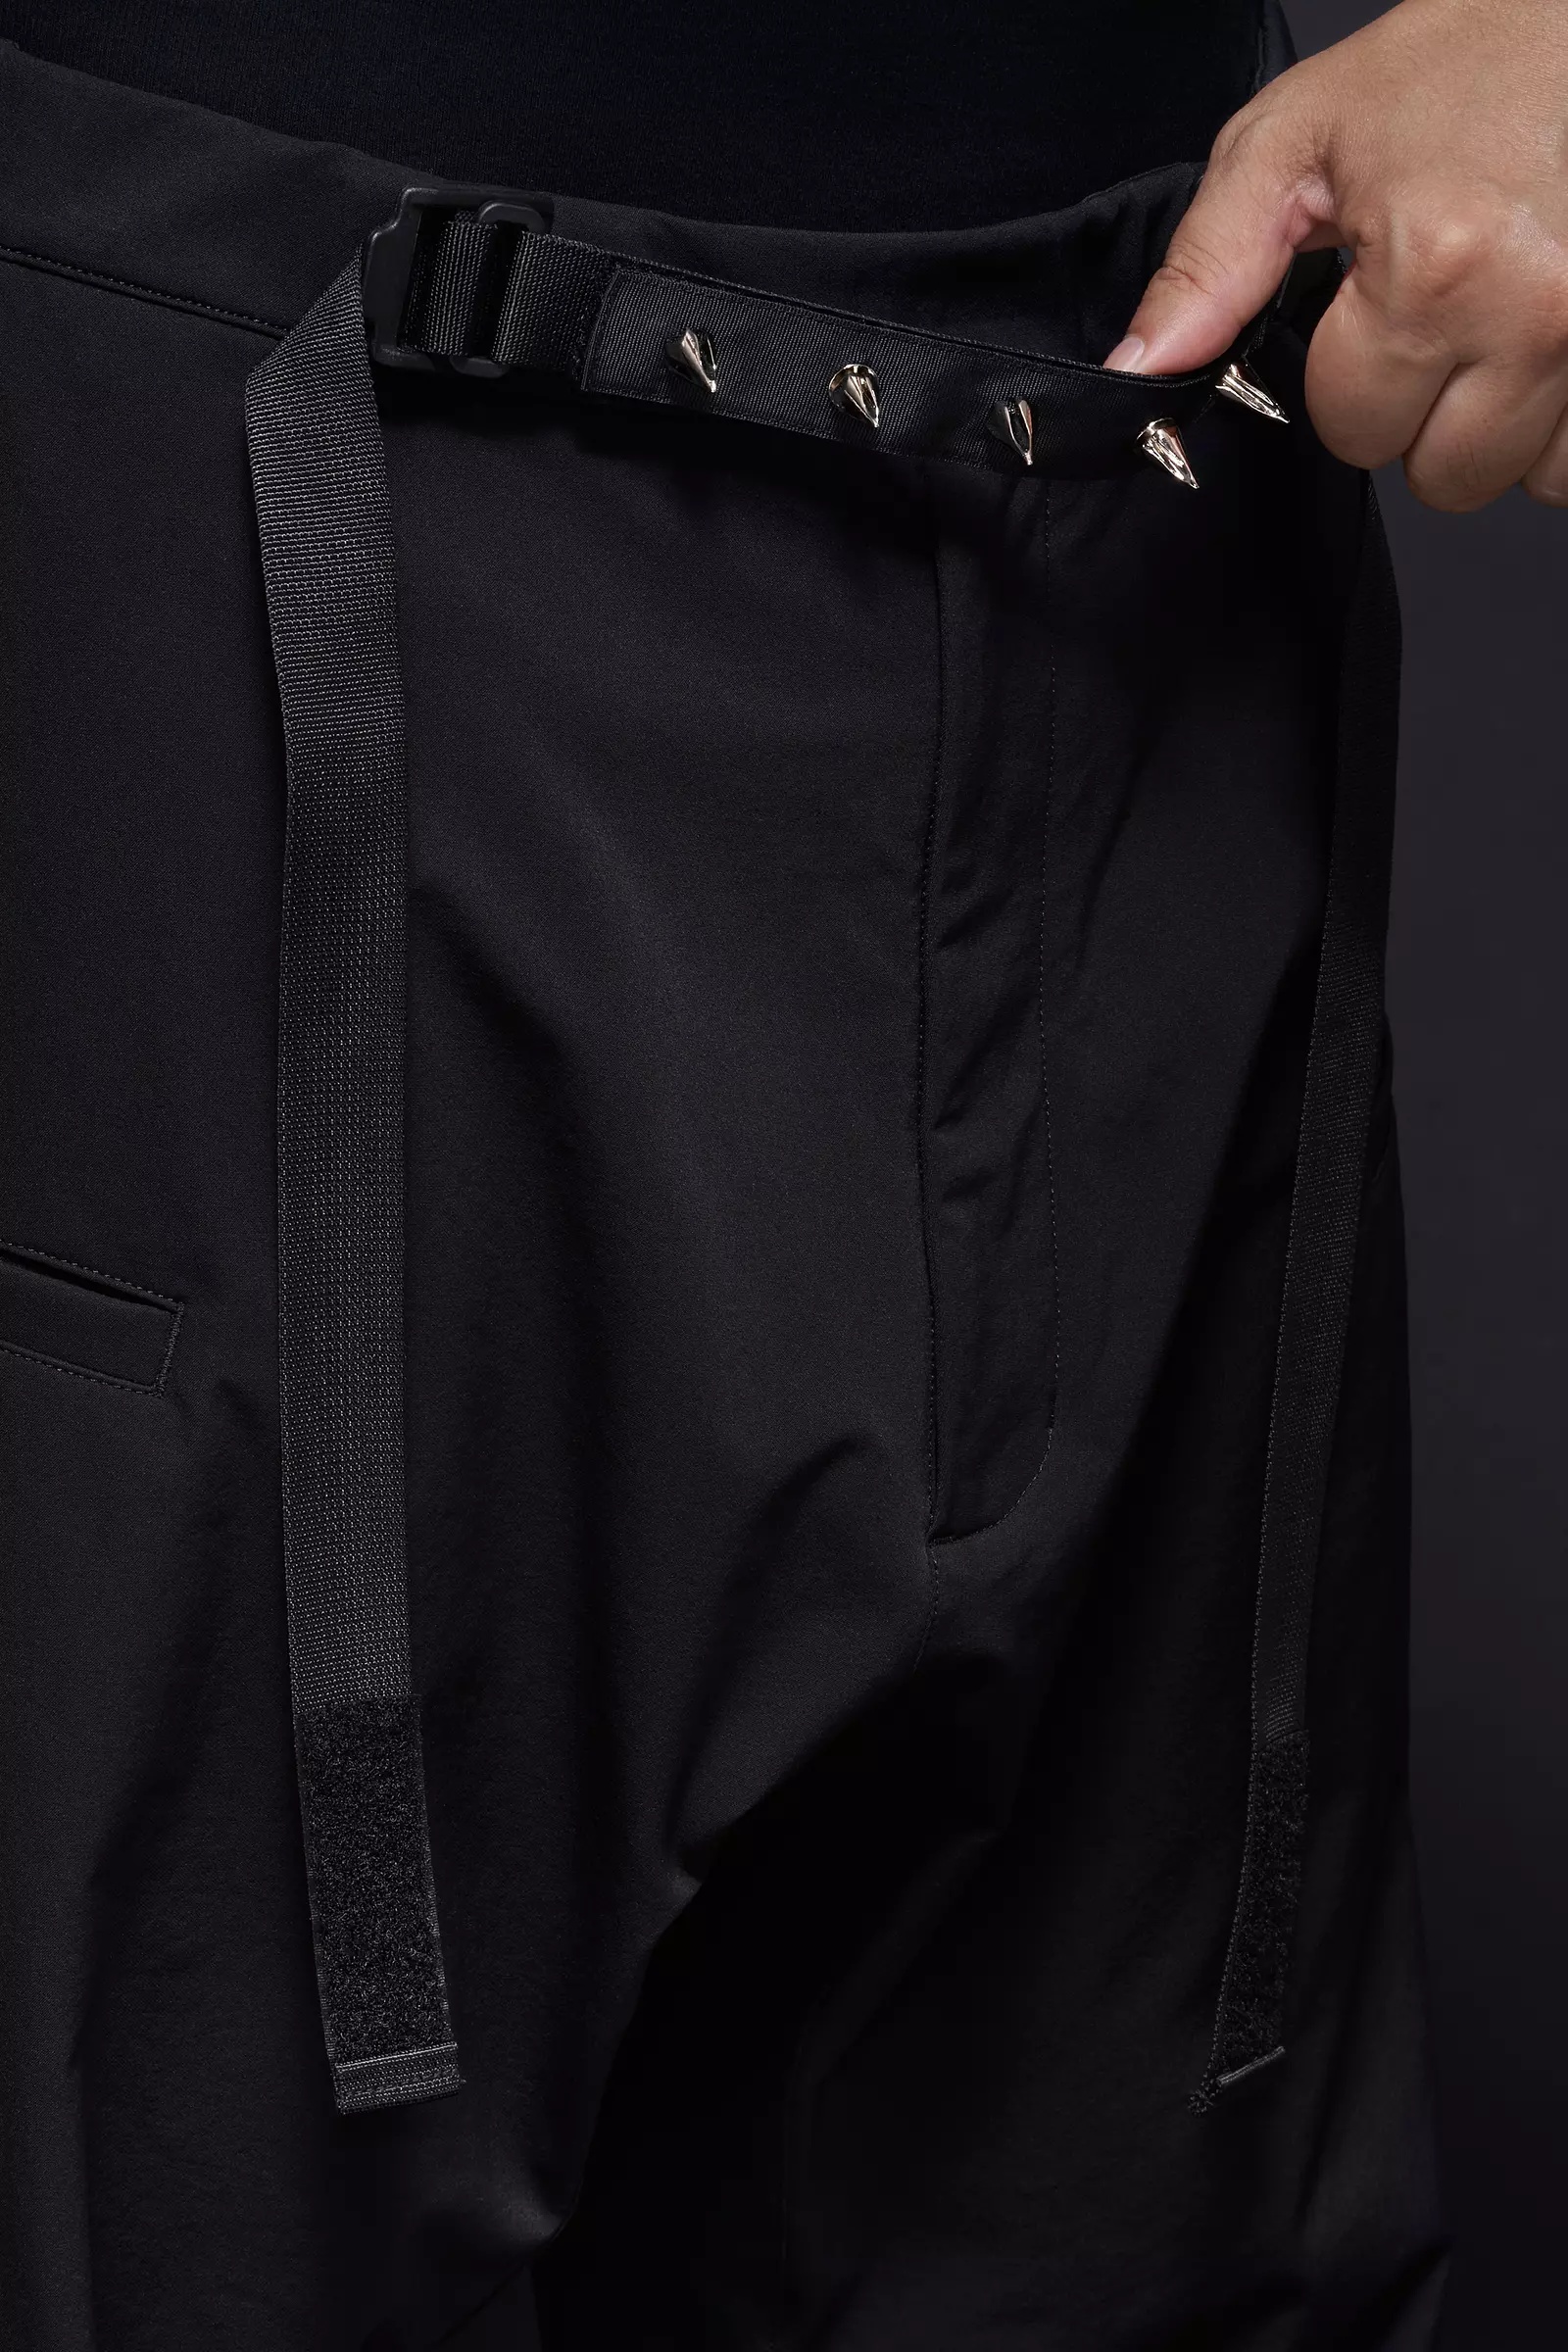 P17-DS schoeller® Dryskin™ Web Belt Trouser Black - 10